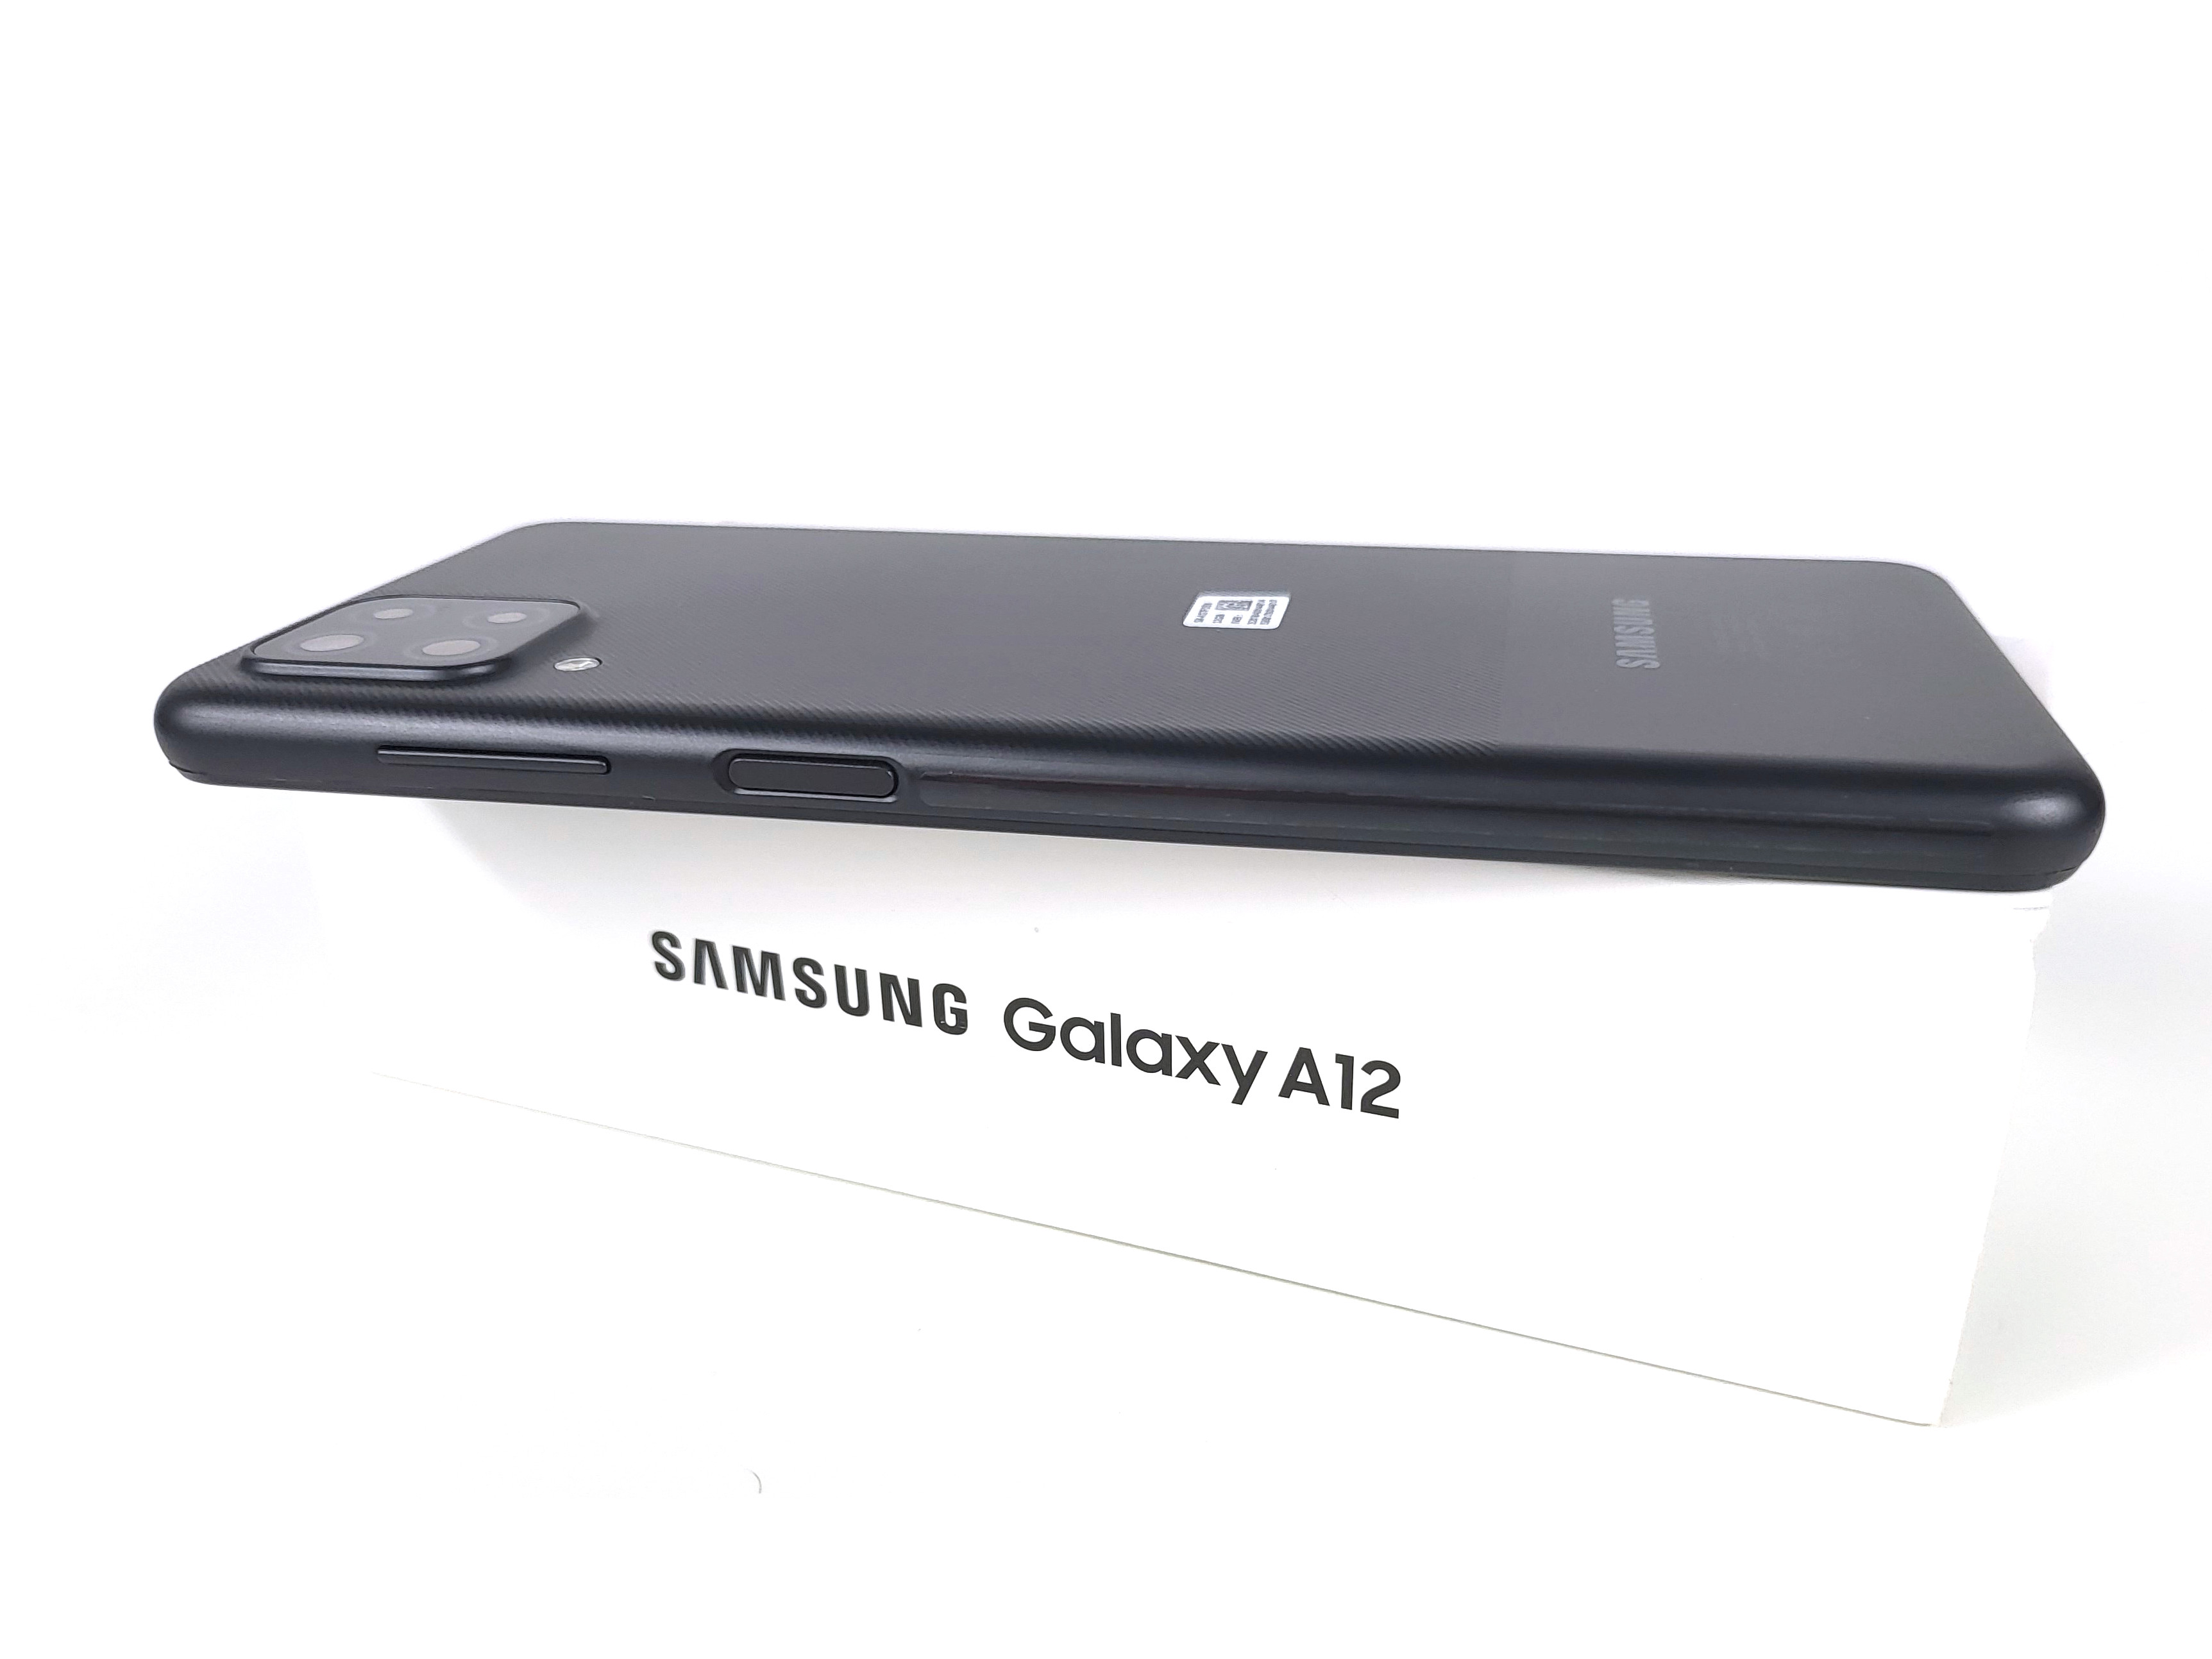 Samsung Galaxy A12 Exynos đã hoàn thành được sứ mệnh của mình. Được trang bị chip Exynos mạnh mẽ, camera chụp hình đẹp, thiết kế sang trọng, siêu phẩm này đang chờ đón bạn đến trải nghiệm cùng hiệu năng đỉnh cao. 